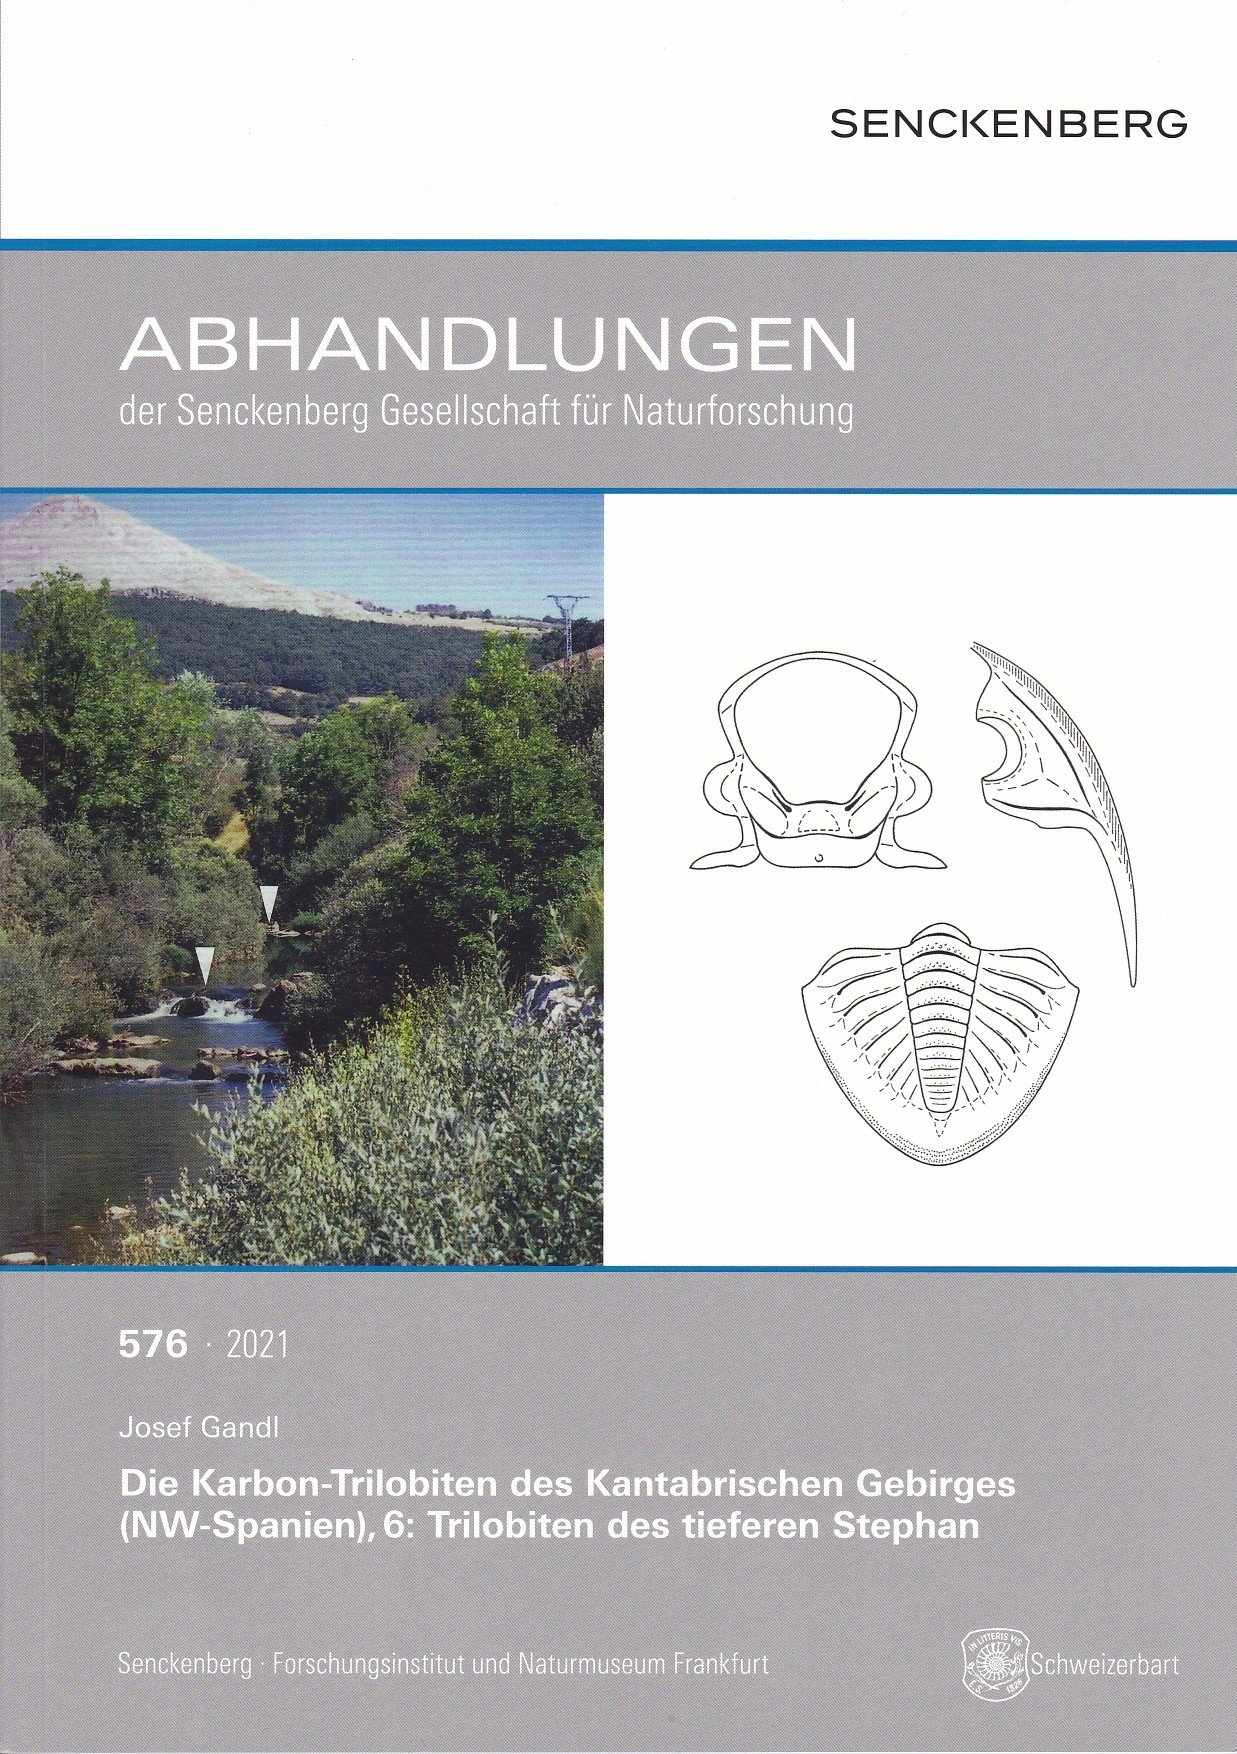 Josef Gandl: Die Karbon-Trilobiten des Kantabrischen Gebirges (NW-Spanien), 6: Trilobiten des tieferen Stephan (Rippl-Rónai Múzeum CC BY-NC-ND)